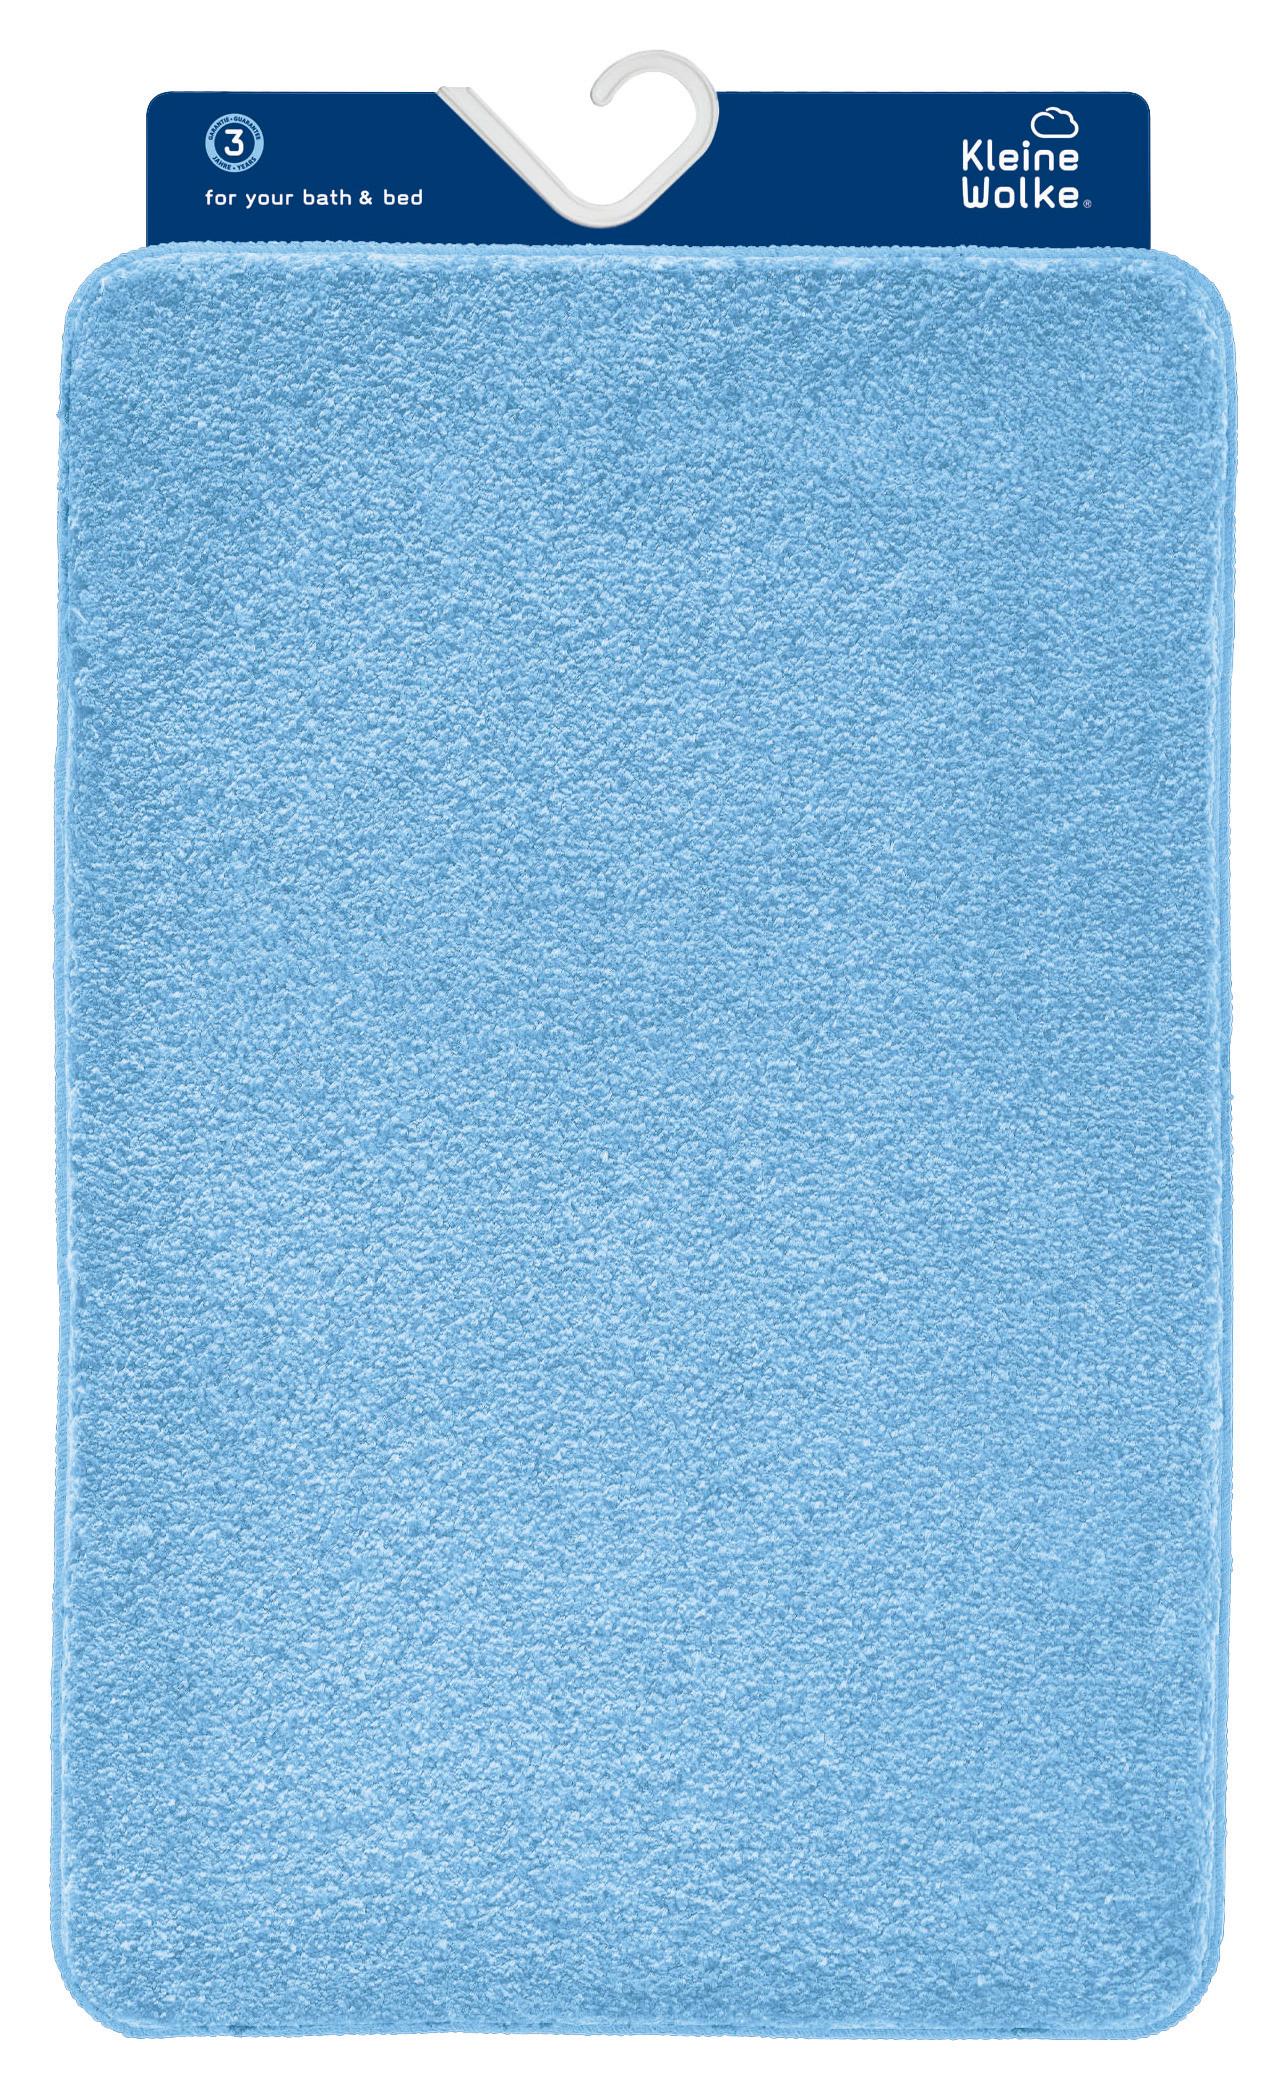 Badteppich Set Noble 85x55 cm Blau Waschbar/Rutschhemmend - Blau, KONVENTIONELL, Textil (55x85/50x50cm) - Kleine Wolke